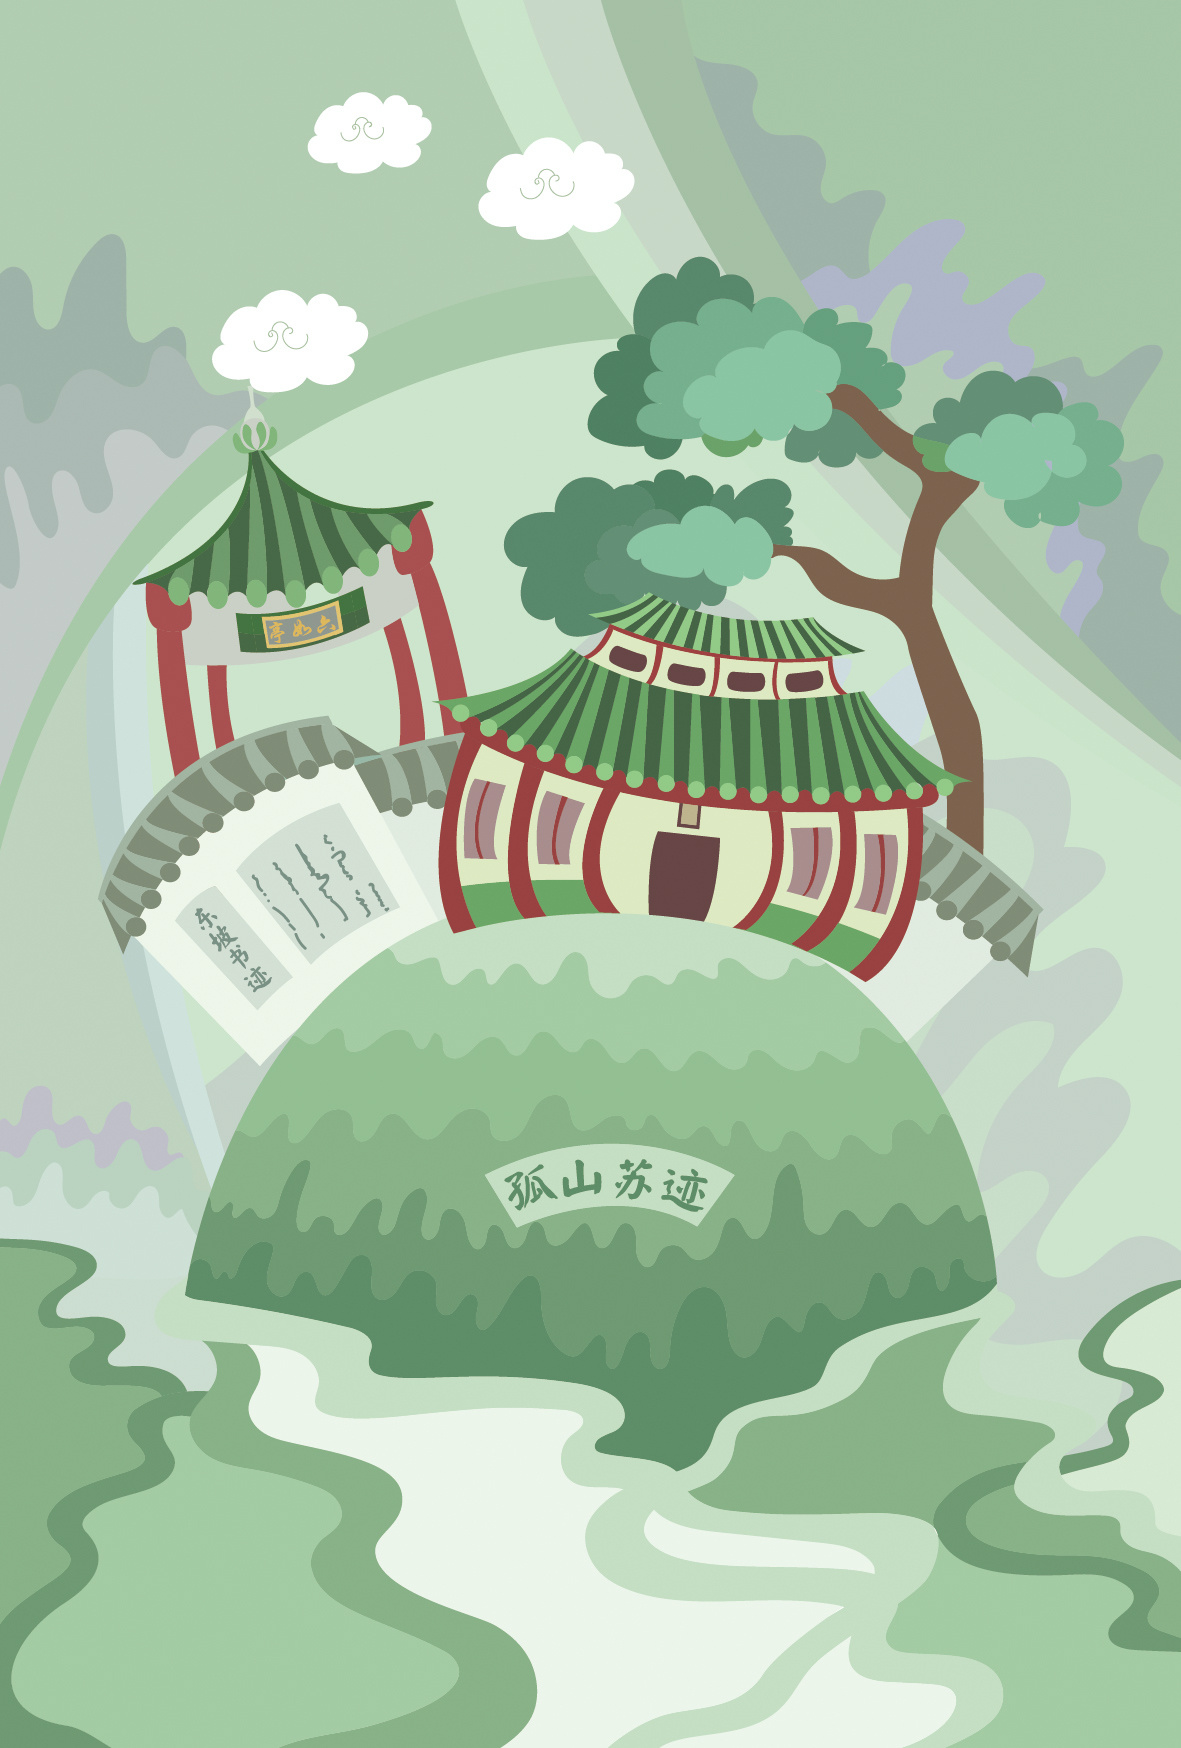 惠州西湖绘画作品图片